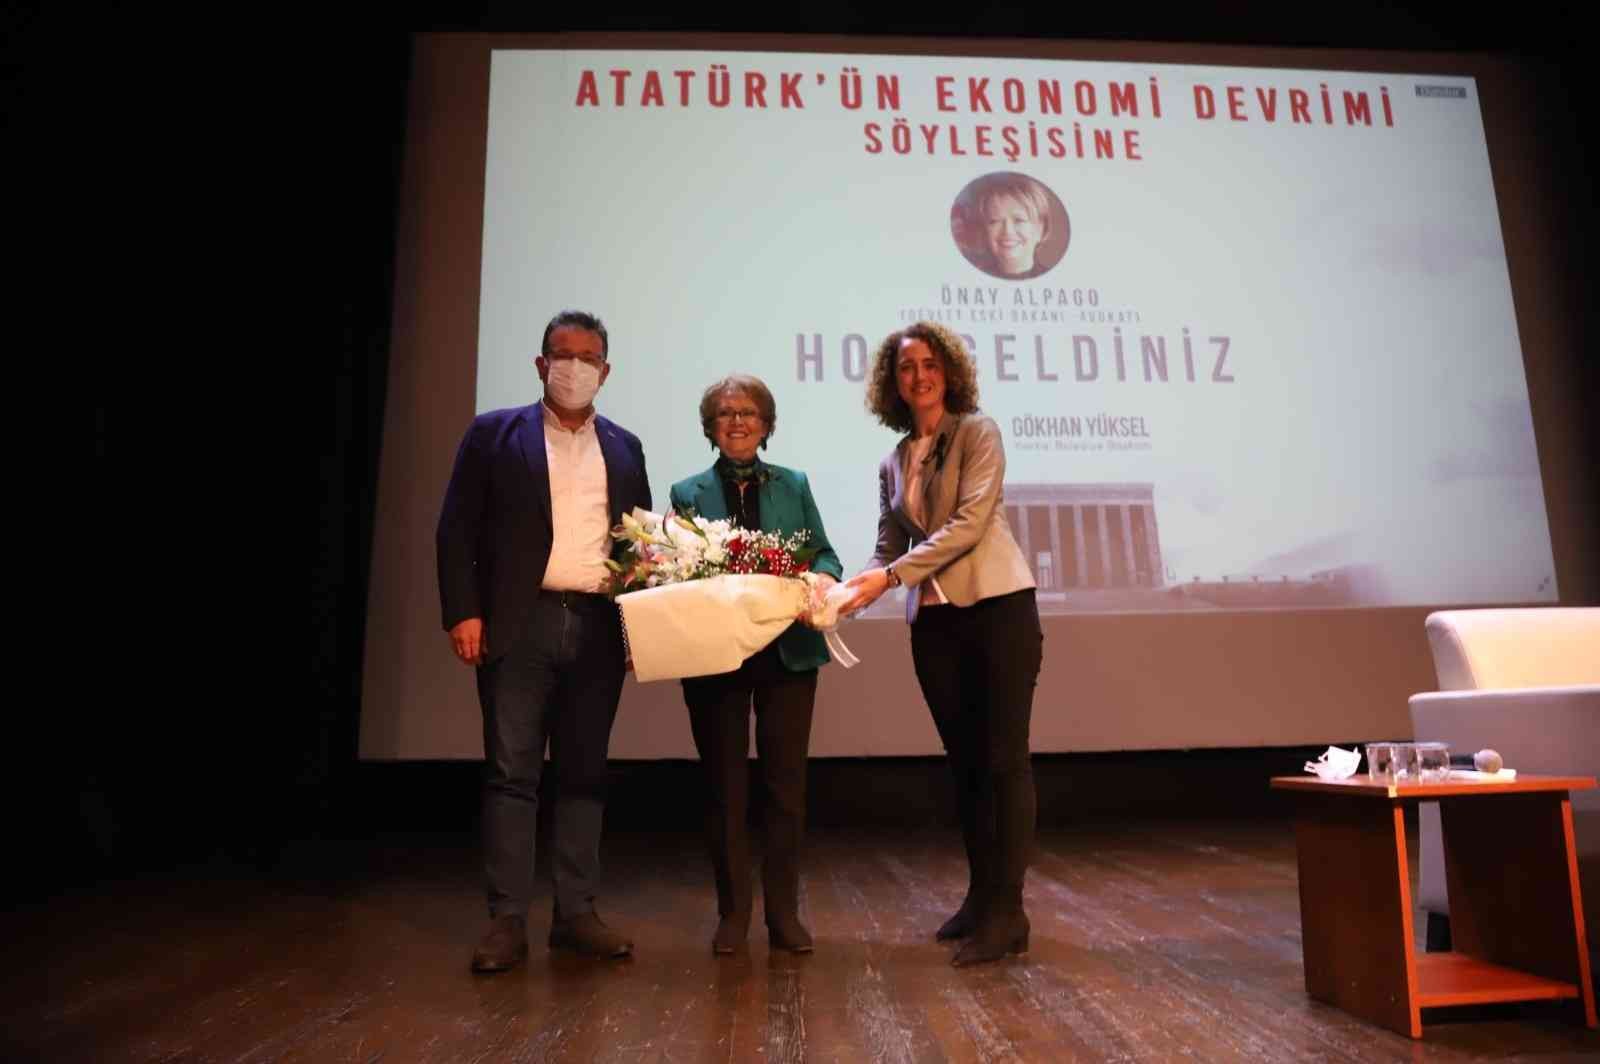 Eski devlet bakanı Önay Alpago, Atatürk’ün ekonomi devrimlerini anlattı #istanbul